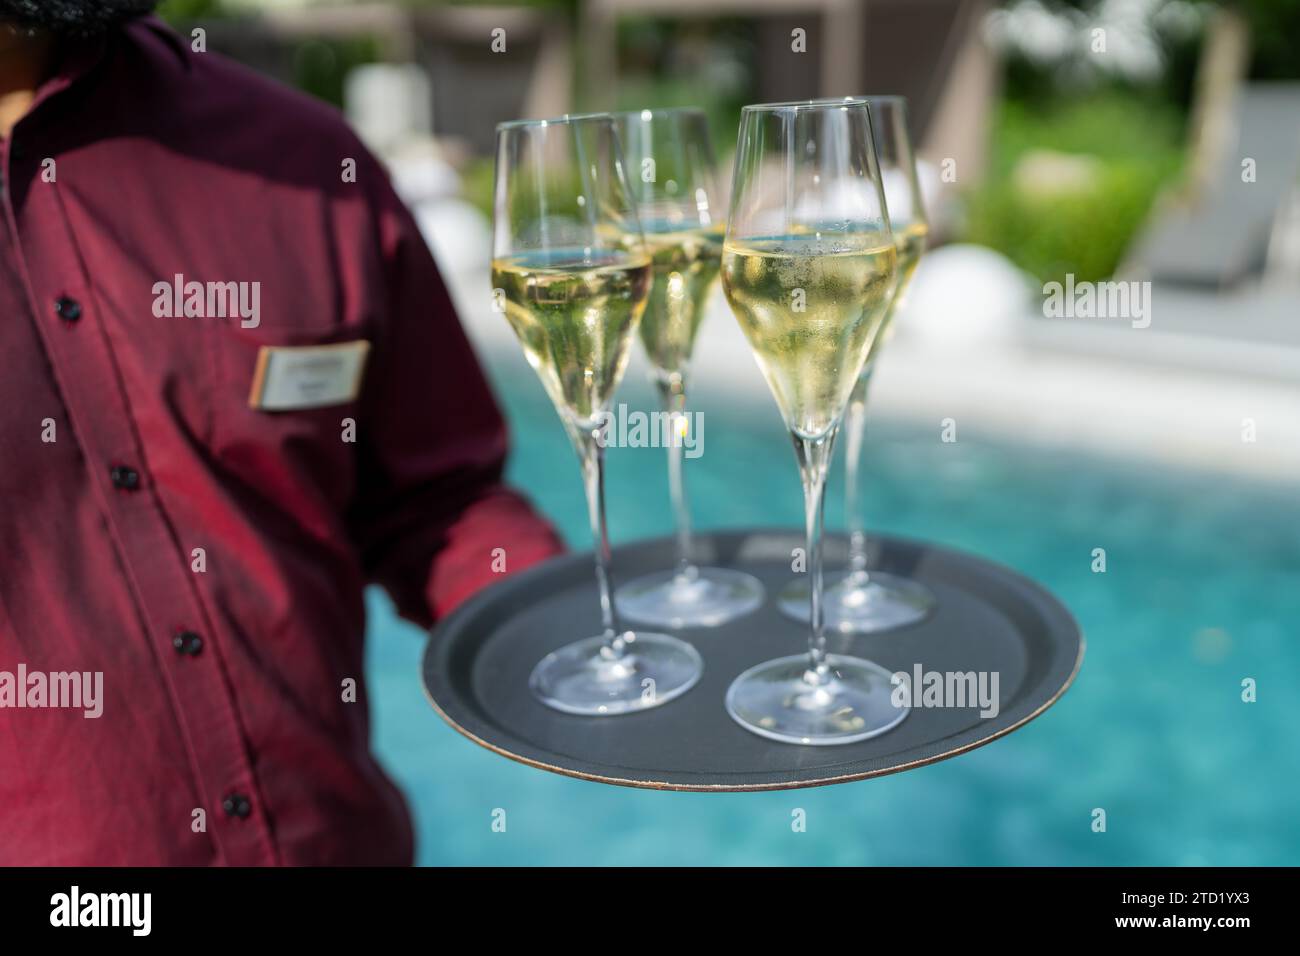 Cameriere con una camicia rossa che tiene in mano un vassoio con tre bicchieri di champagne a bordo piscina. Immagine del concetto di viaggio alberghiero Foto Stock